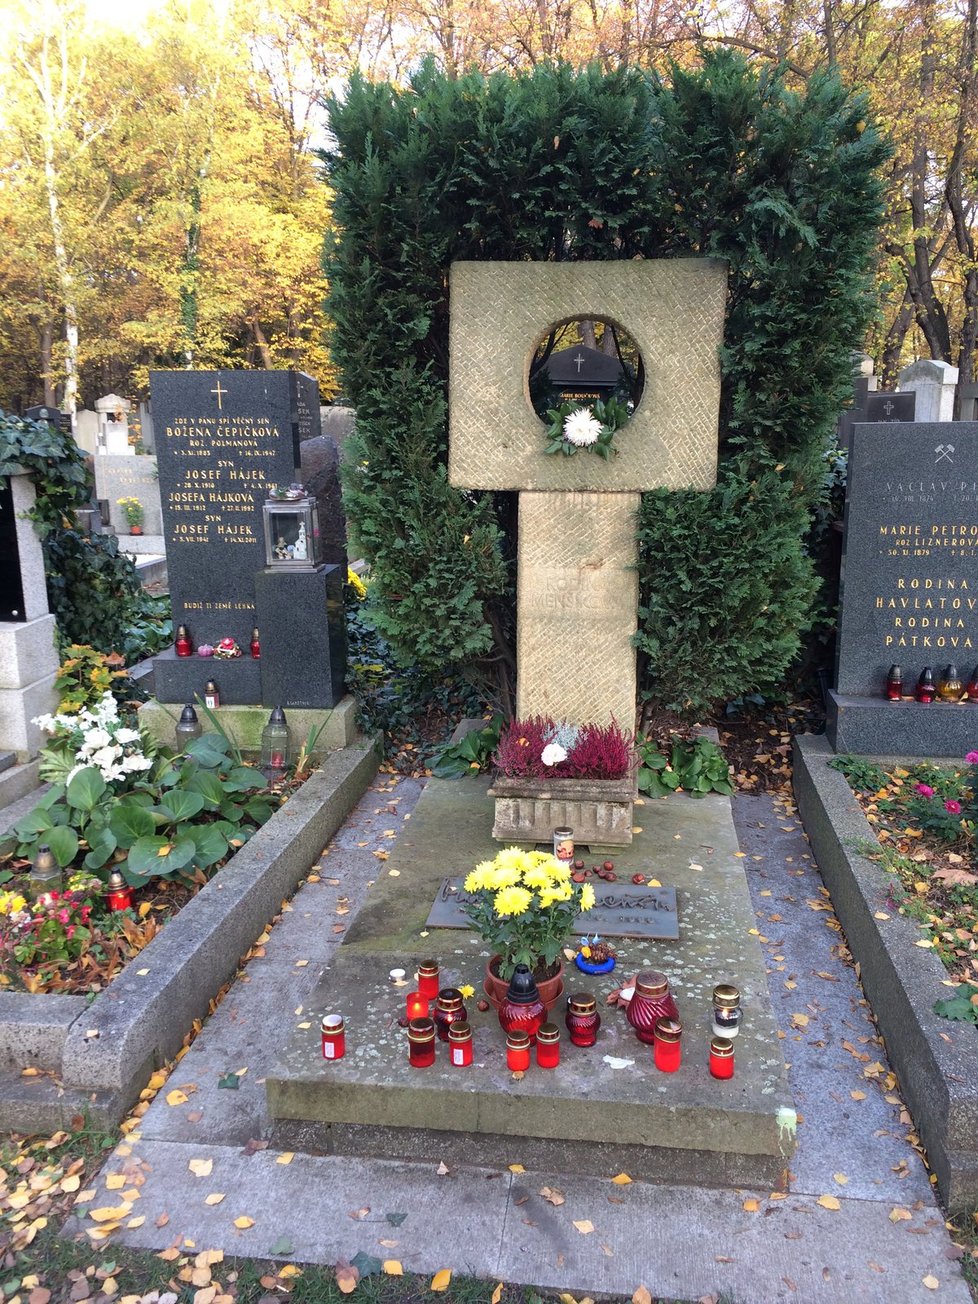 Svíčky lidé zapálili na hrobu herce Vladimíra Menšíka na Olšanských hřbitovech.